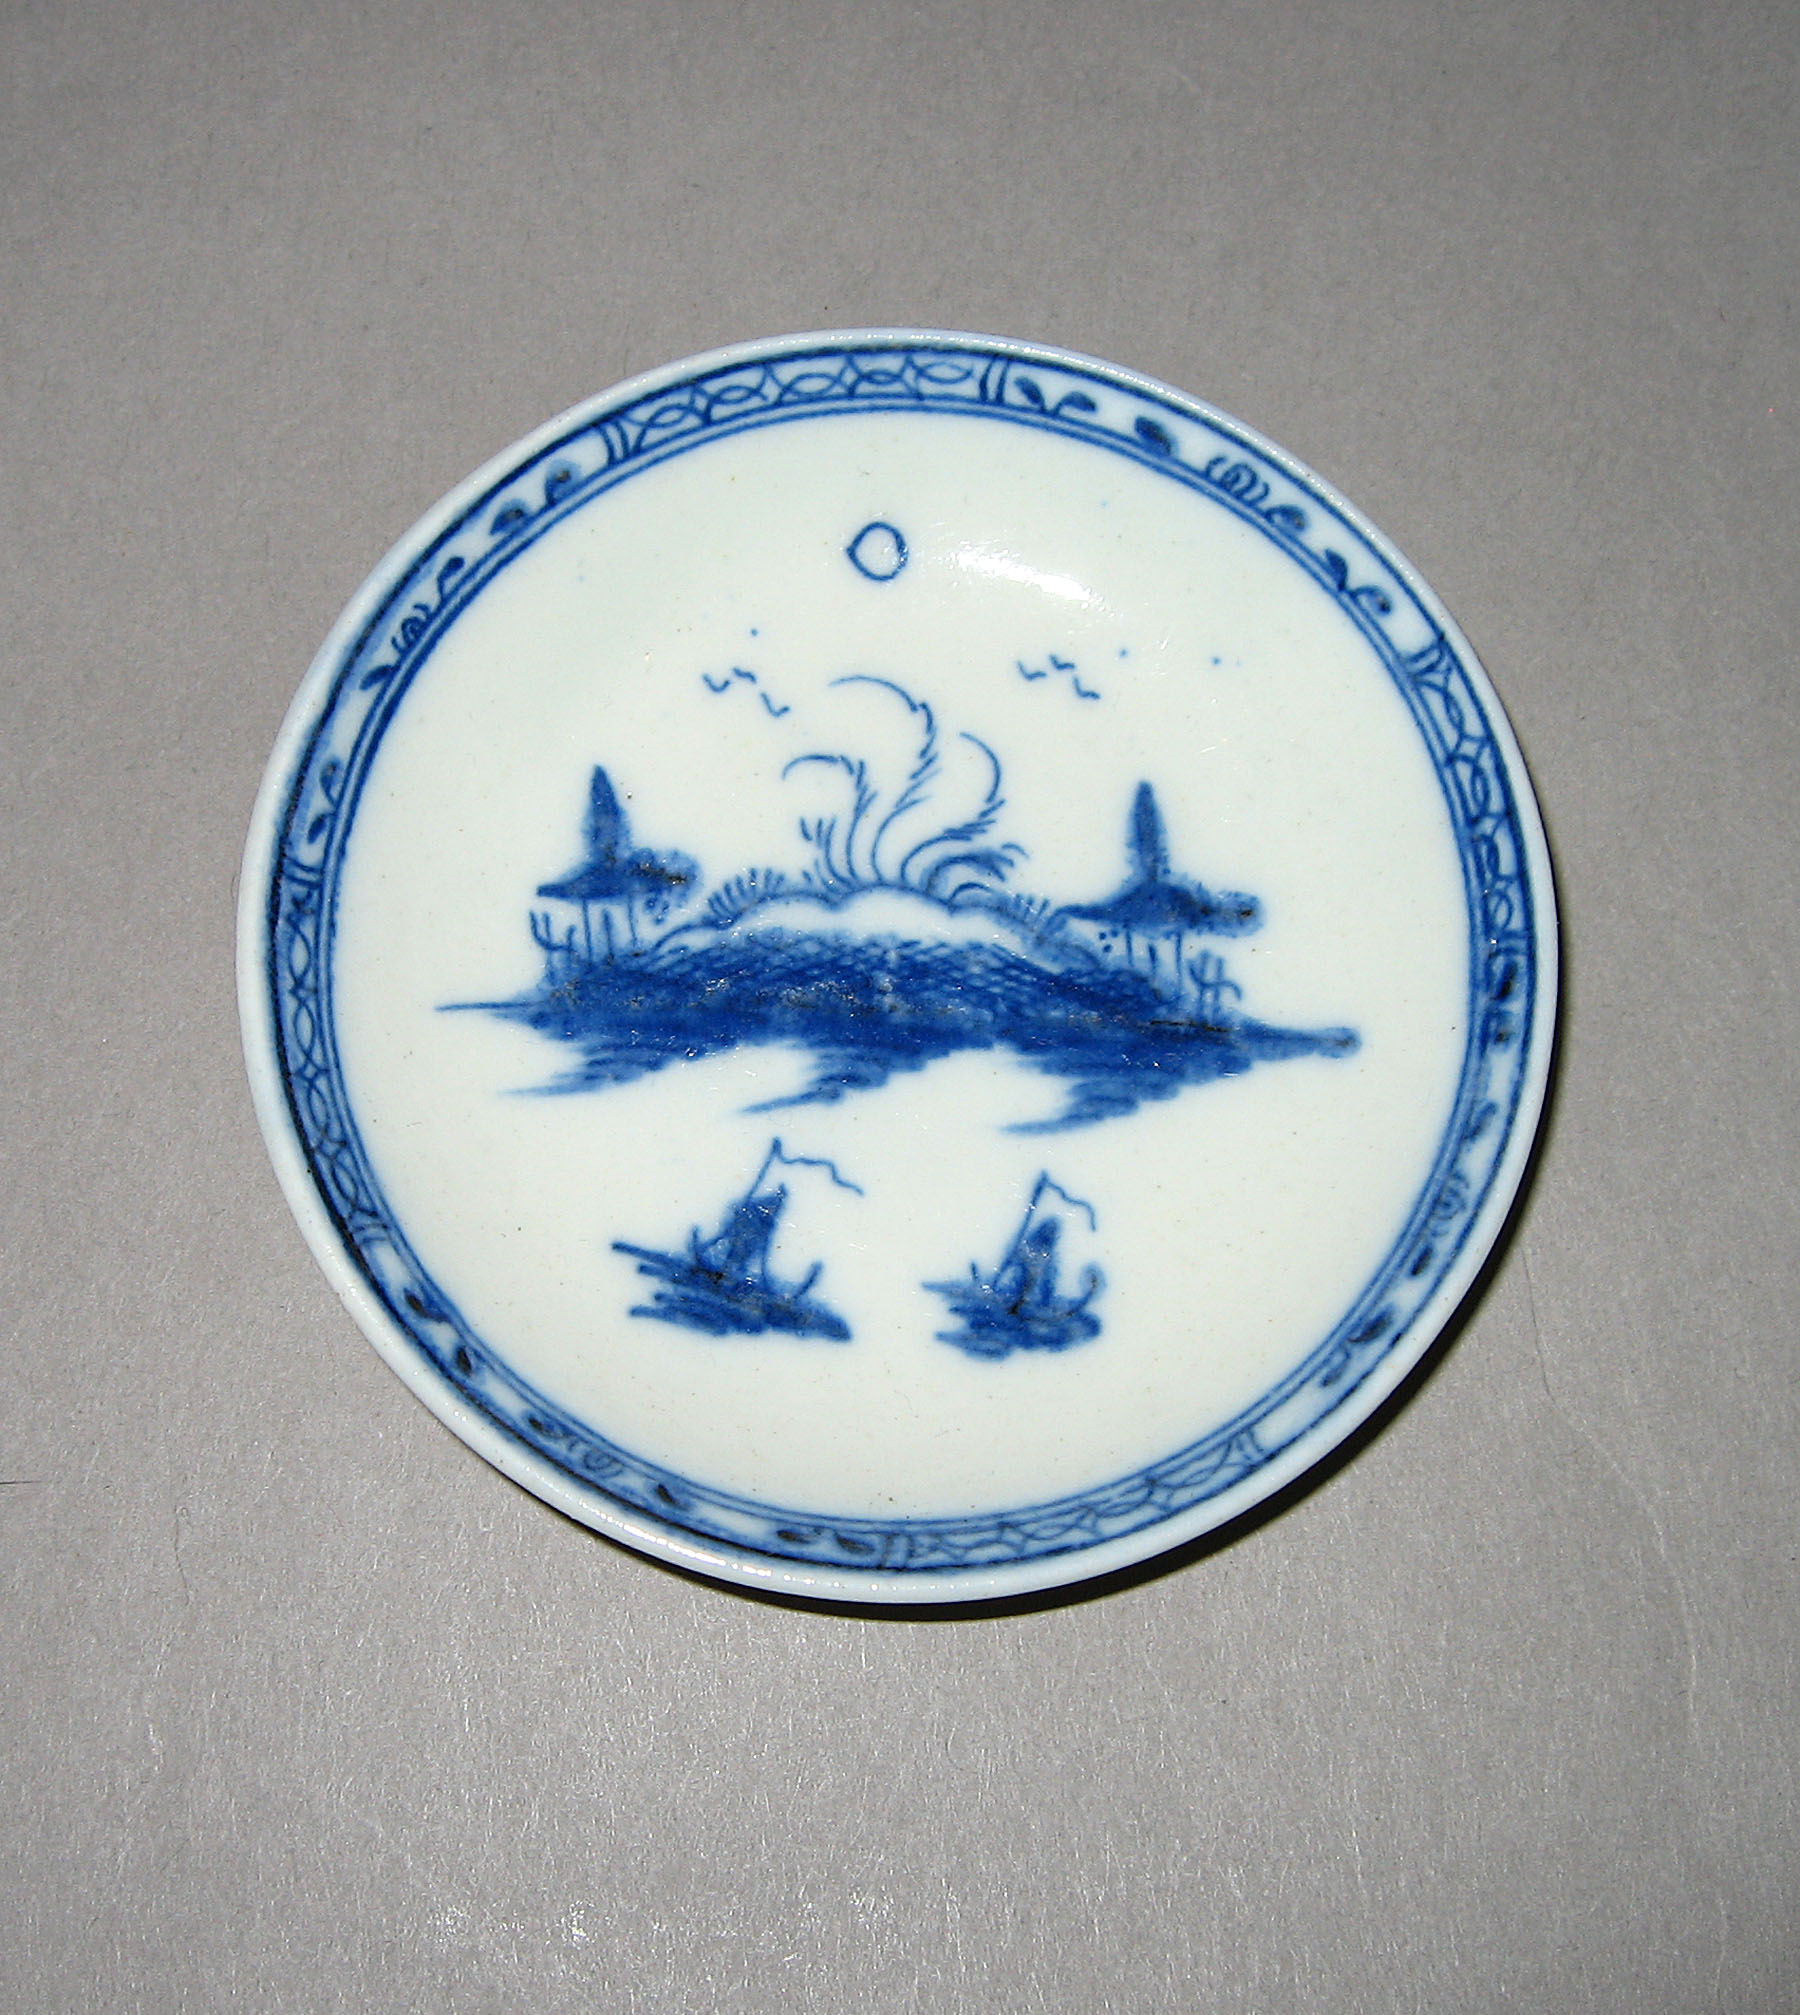 1965.0561.005 Miniature saucer